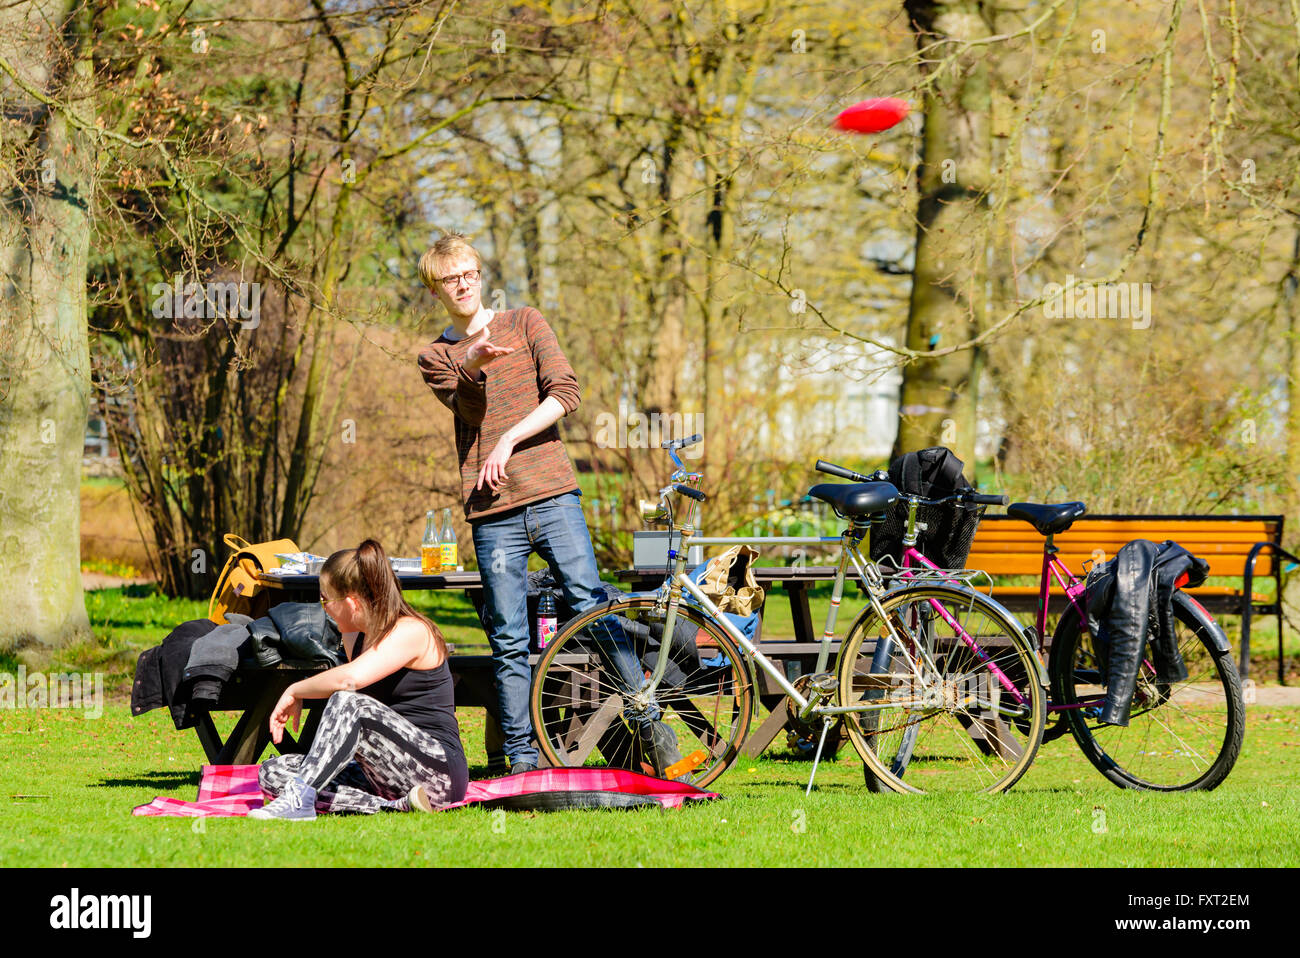 Lund, Suède - 11 Avril 2016 : tous les jours la vie en ville. Young adult man dans un parc est de lancer un disque volant tandis qu'une femme siège à fro Banque D'Images